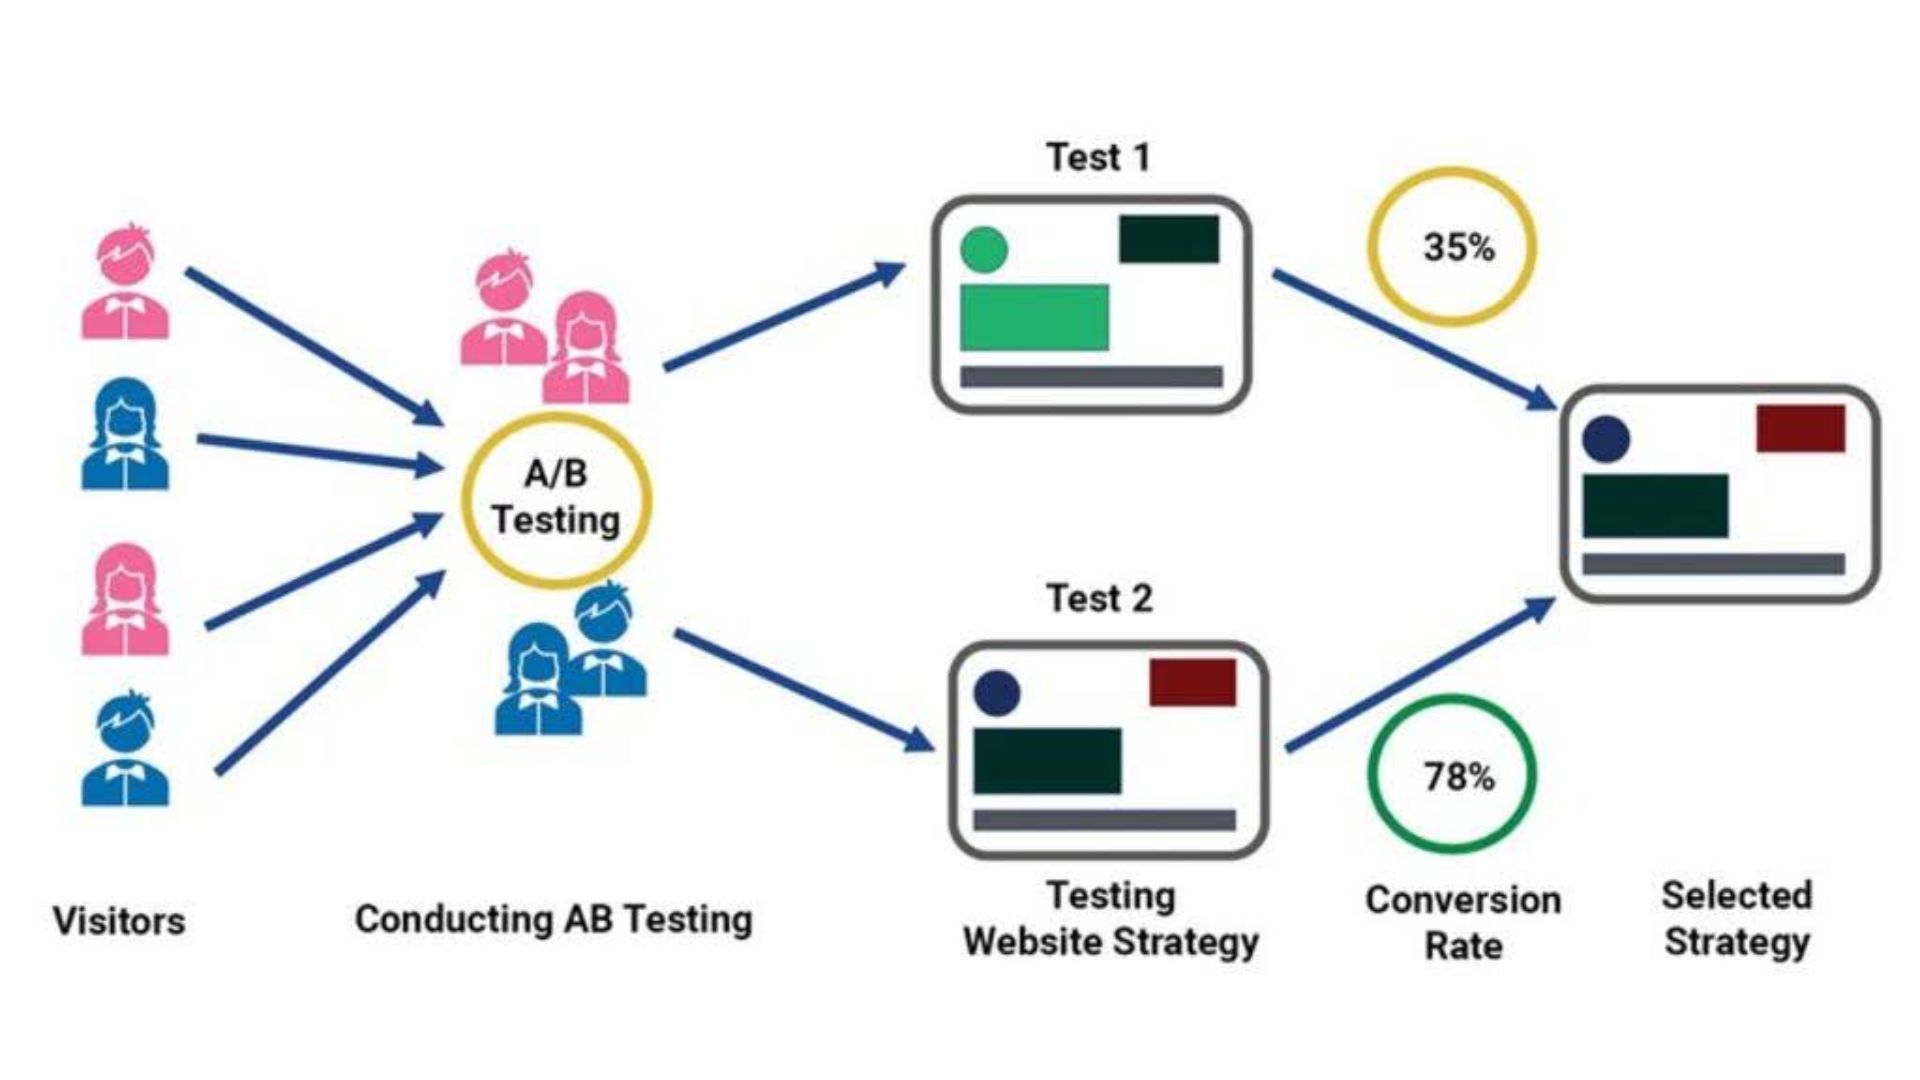 a/b testing in affiliate marketing